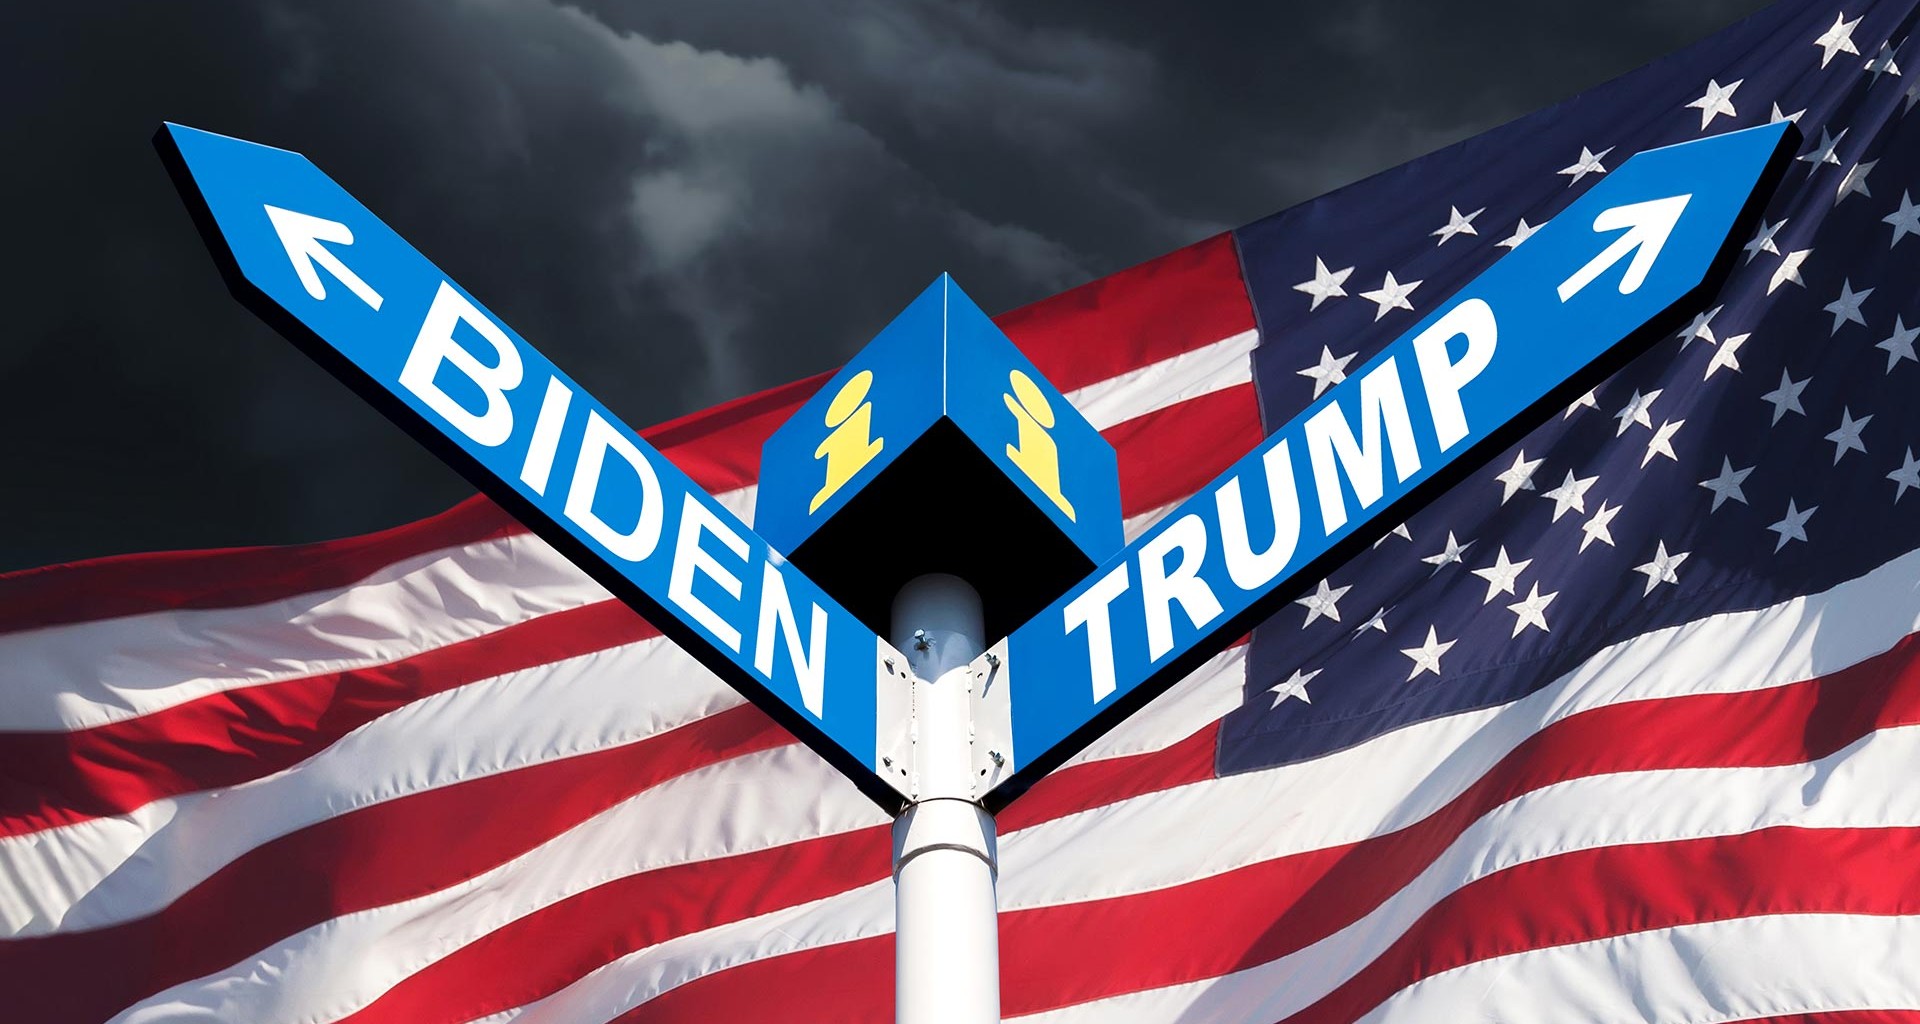 Biden o Trump. Expertos analizan primer debate presidencial